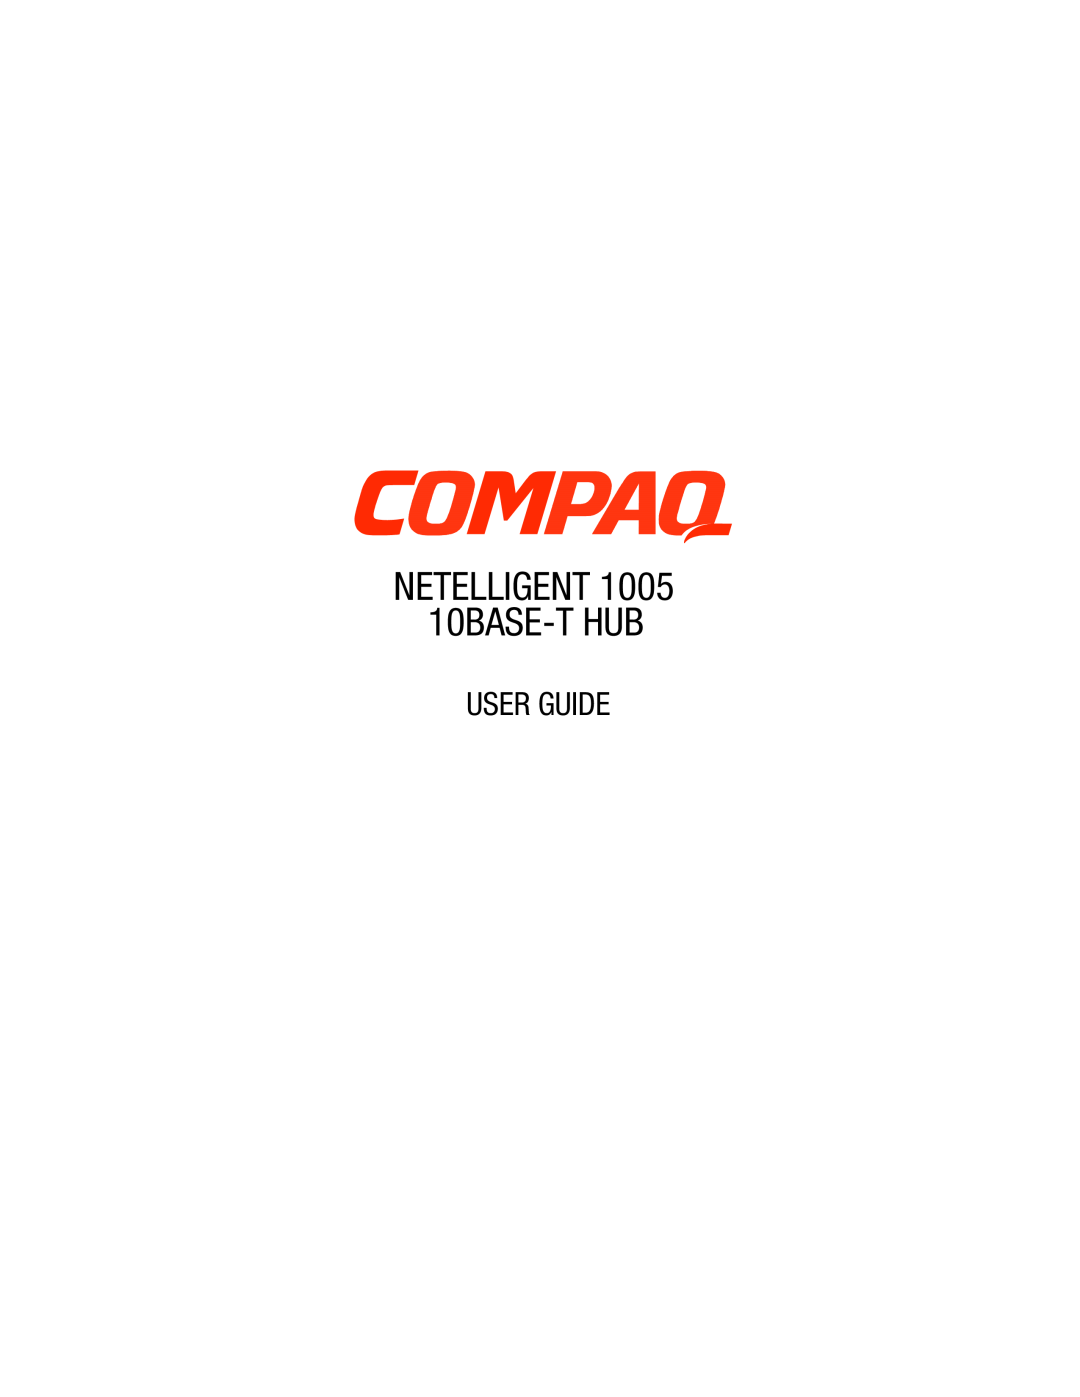 Compaq manual NETELLIGENT 1005 10BASE-T HUB USER GUIDE 